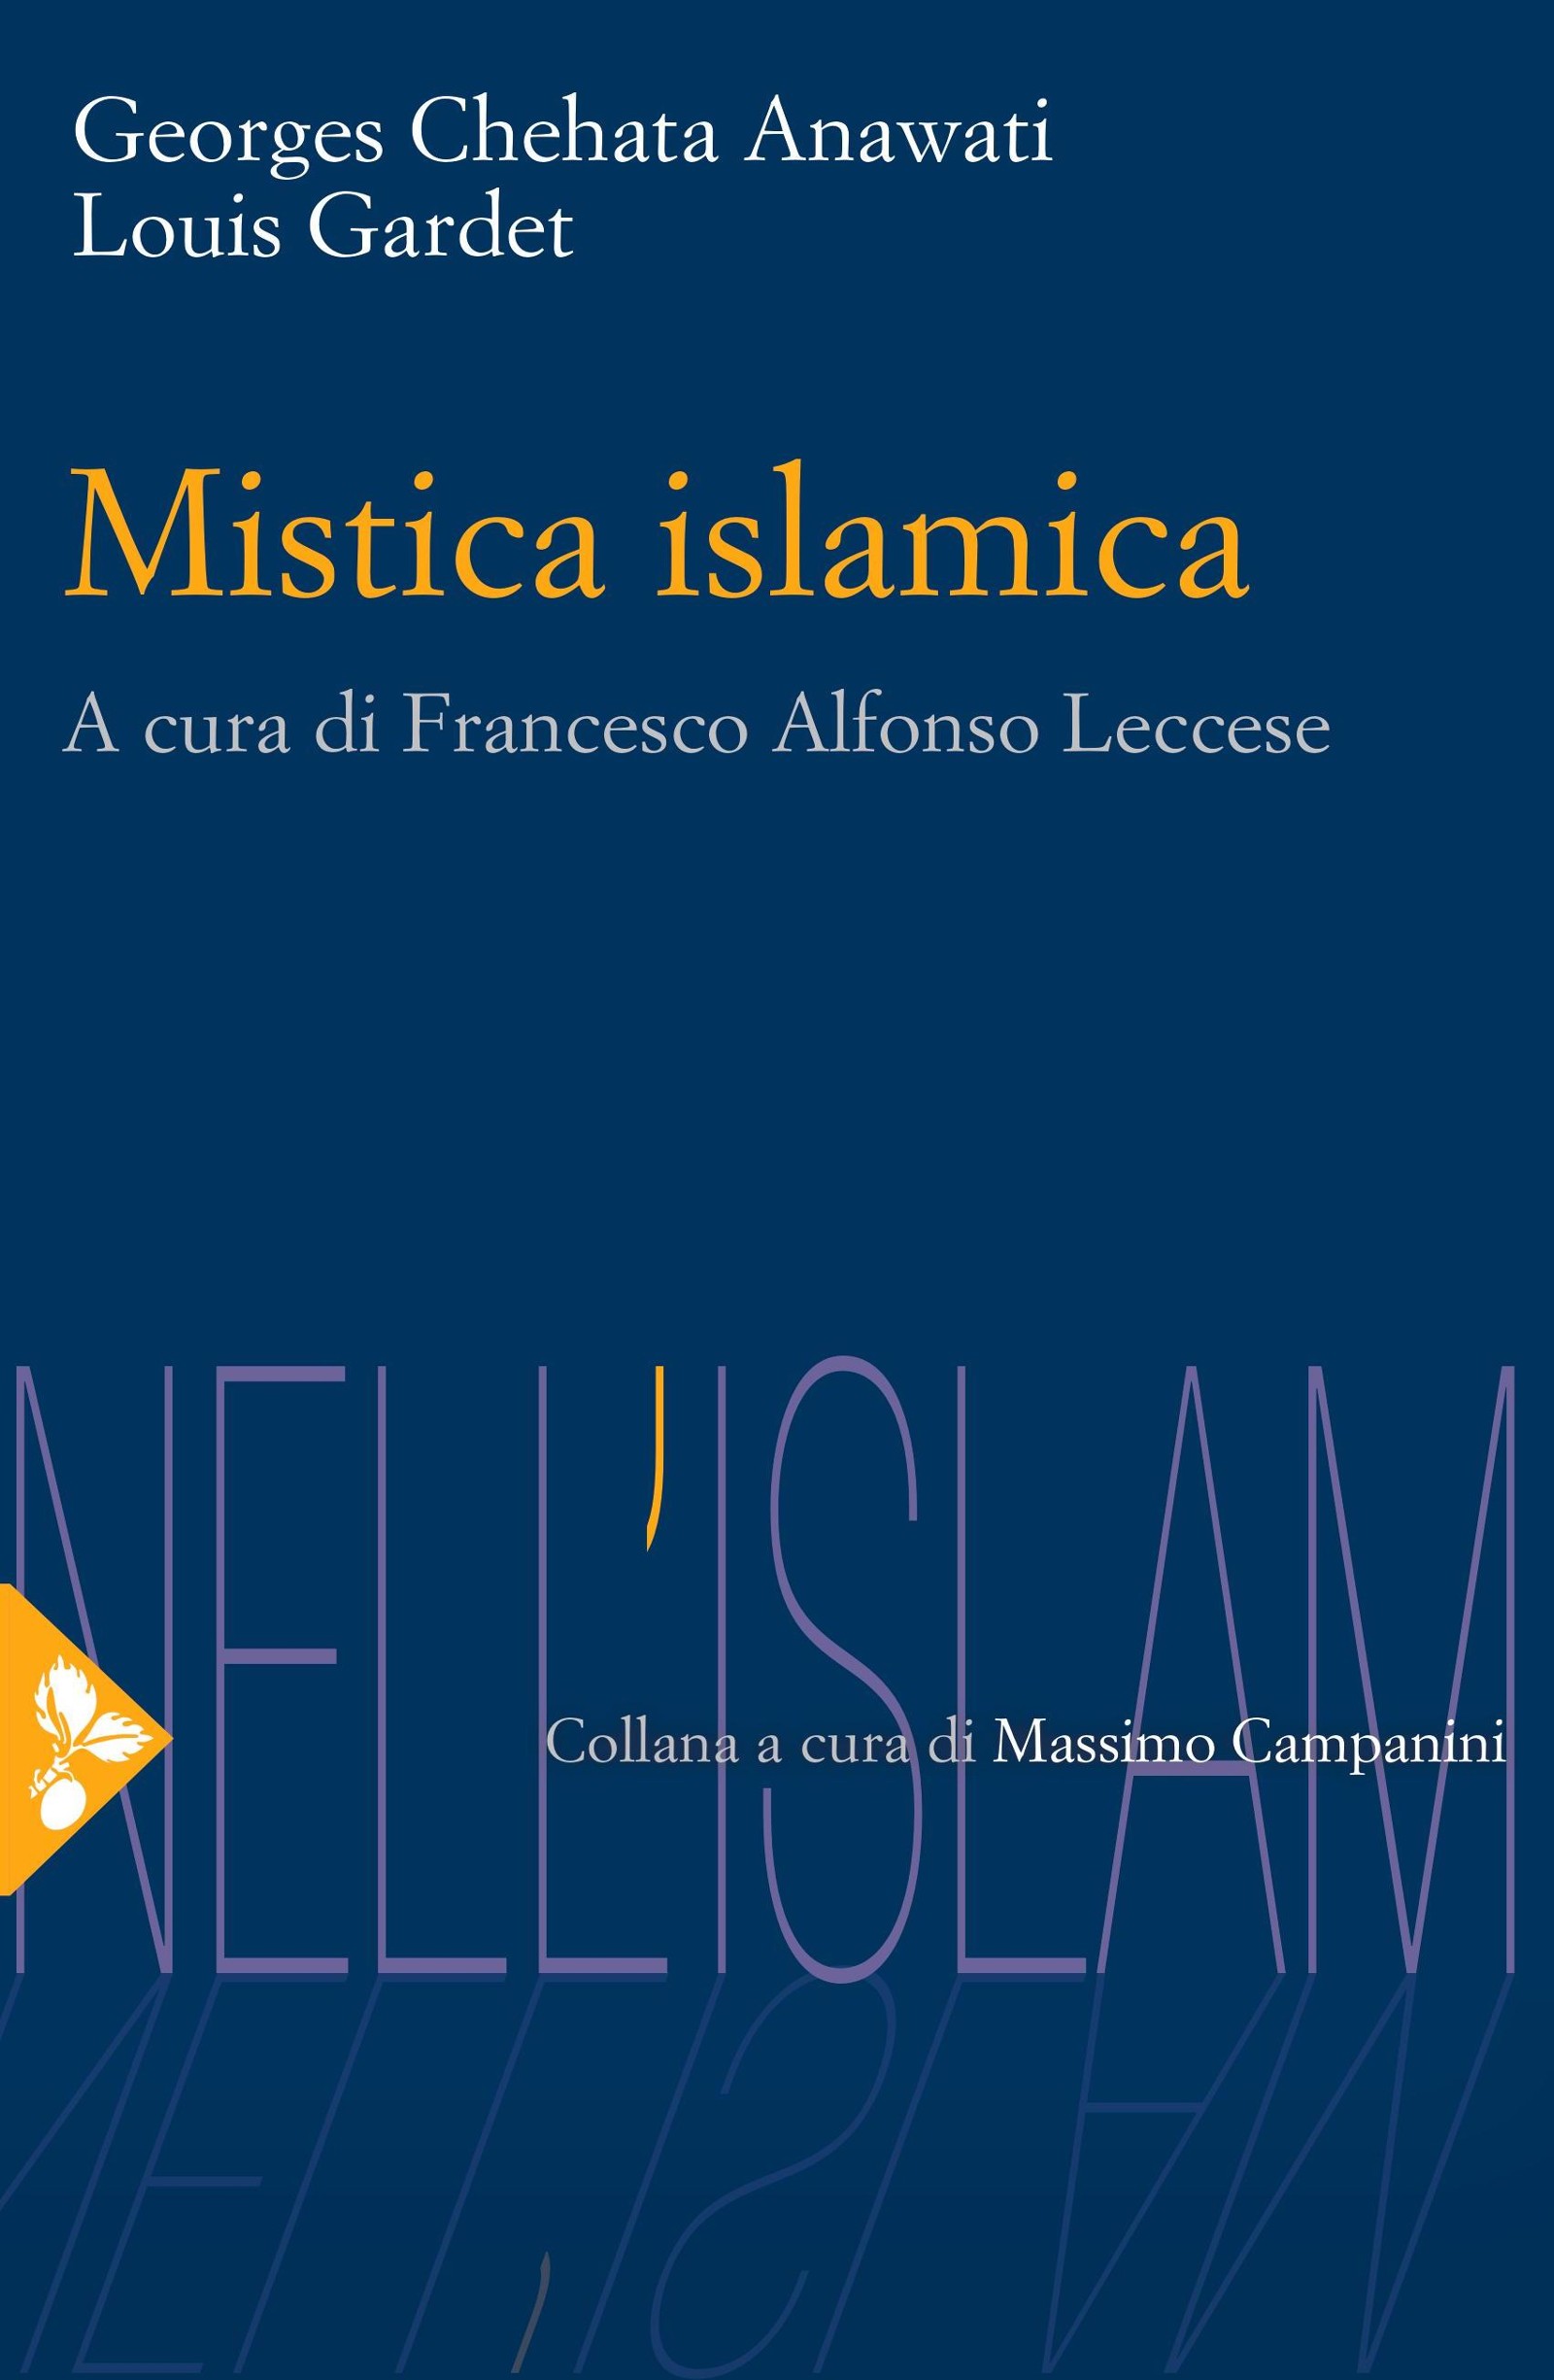 Mistica islamica - Librerie.coop